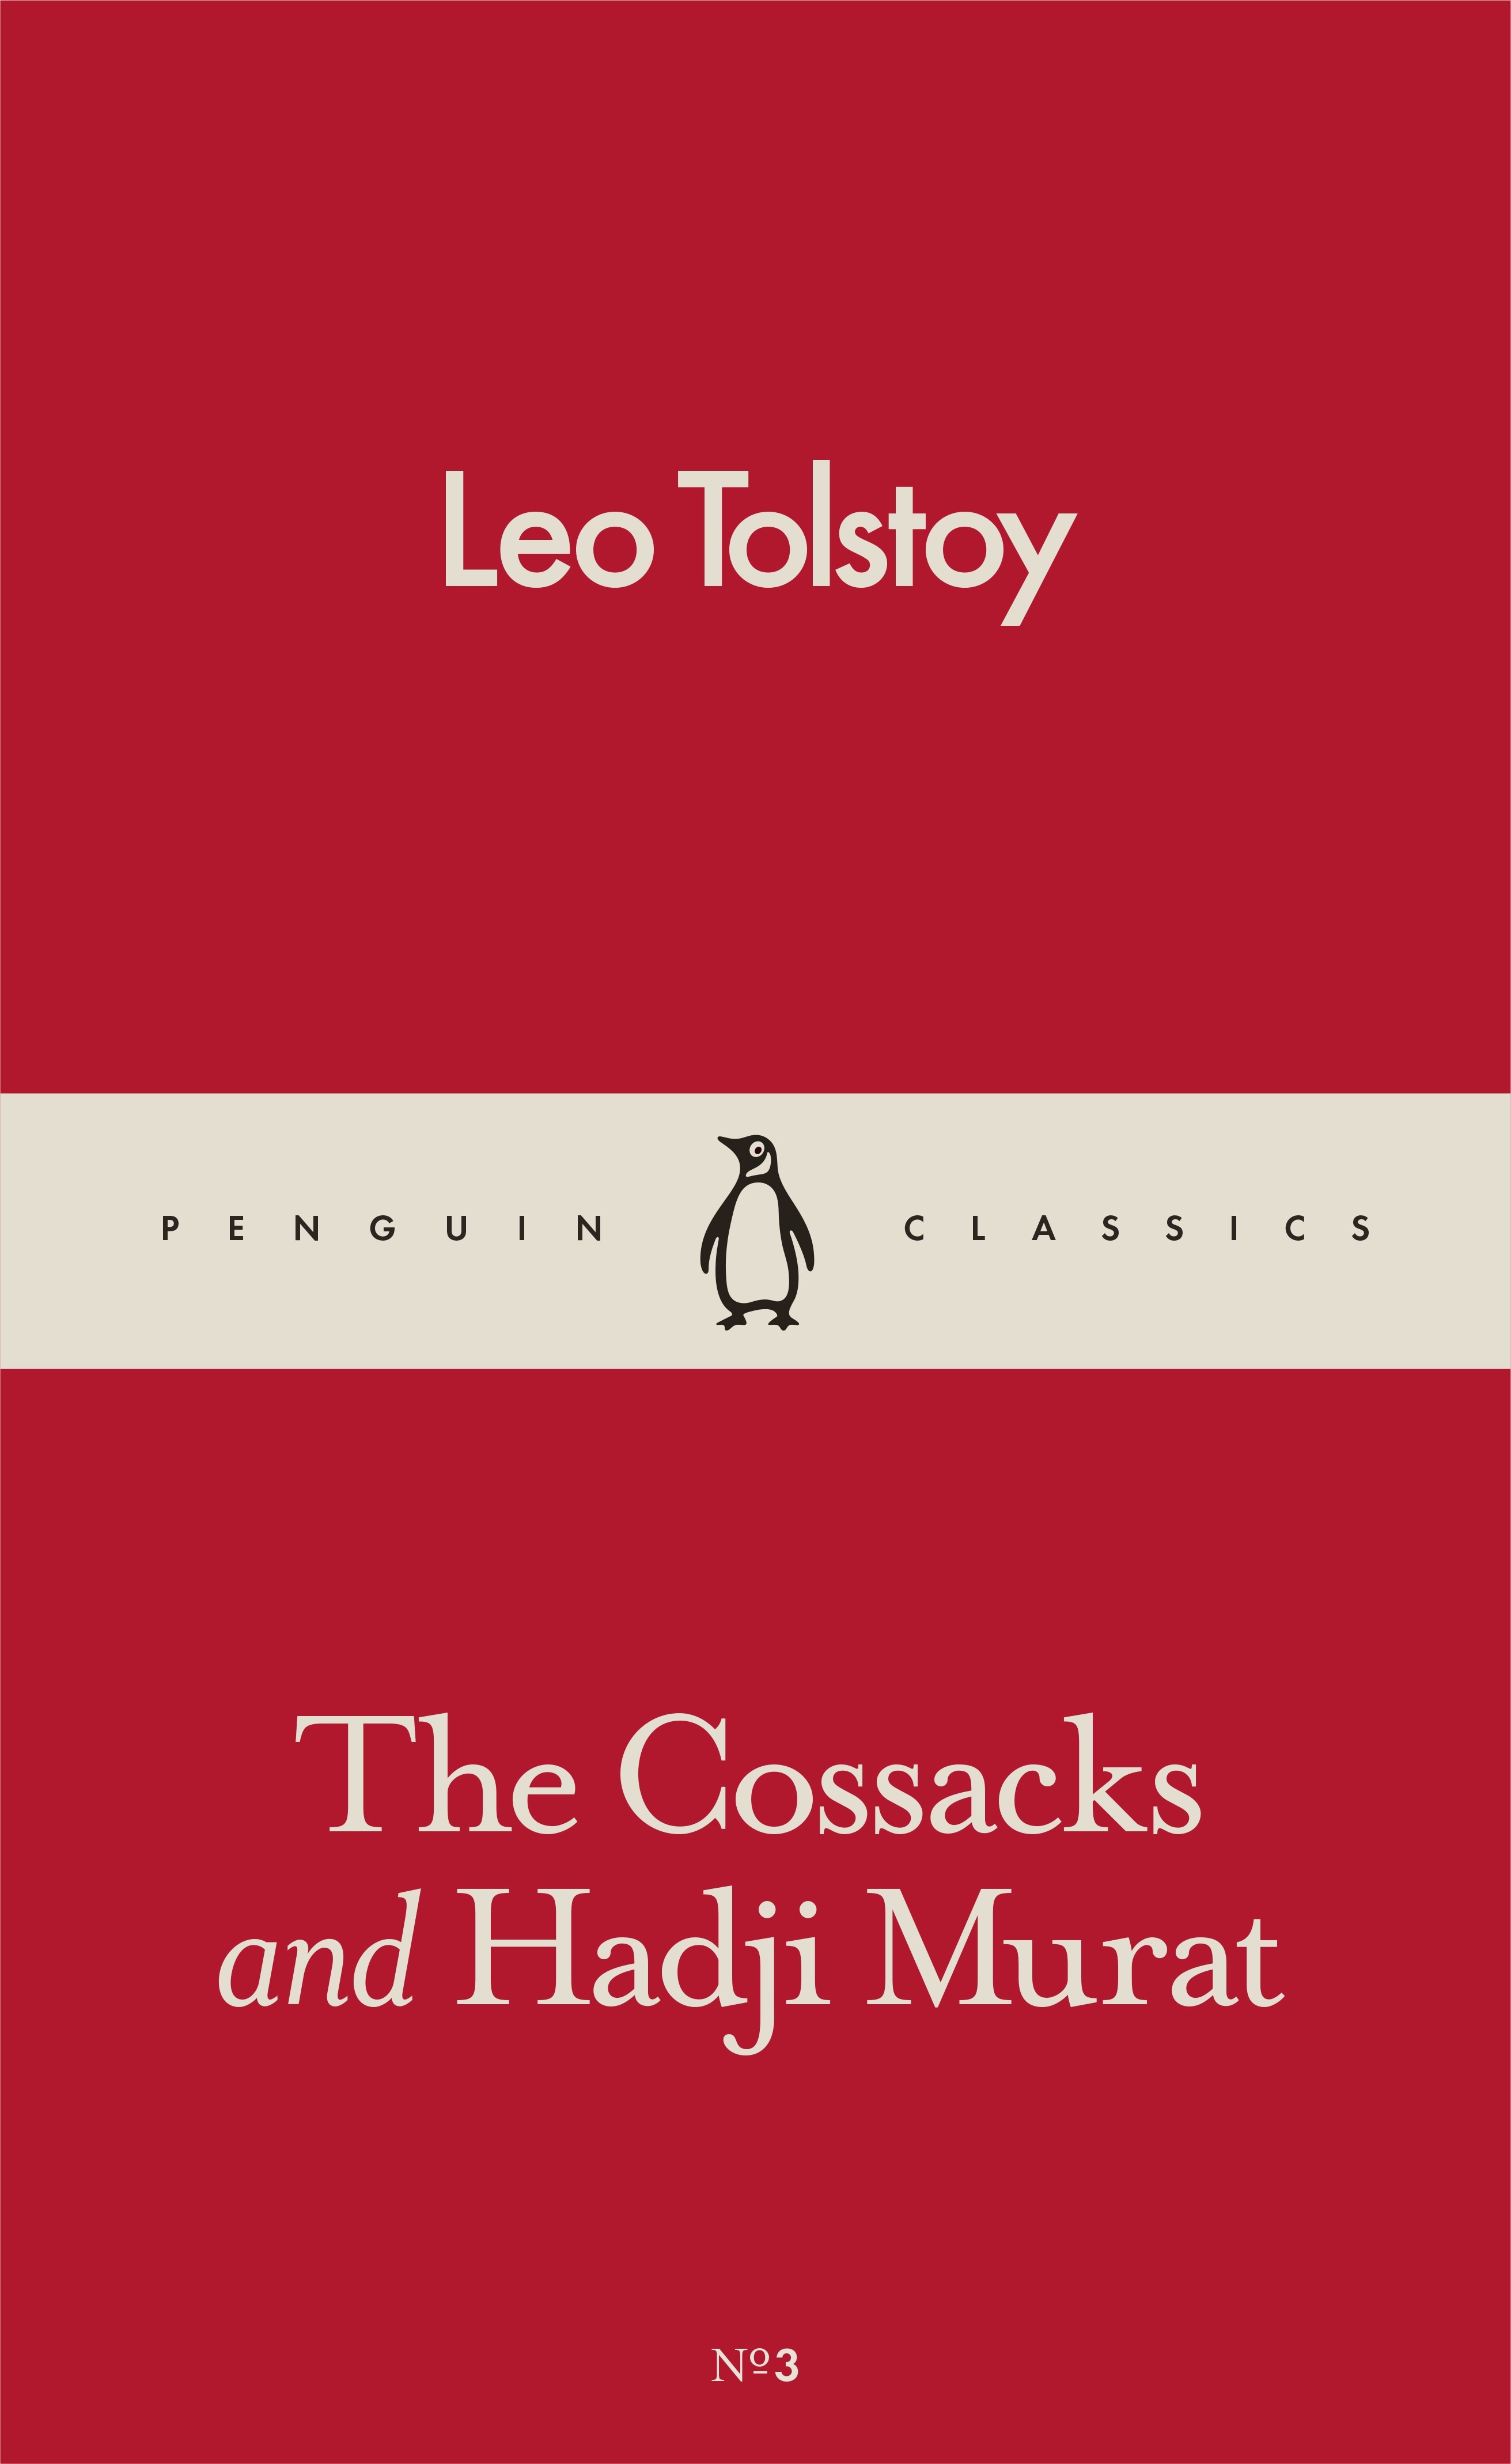 Book “The Cossacks and Hadji Murat” by Leo Tolstoy — May 26, 2016